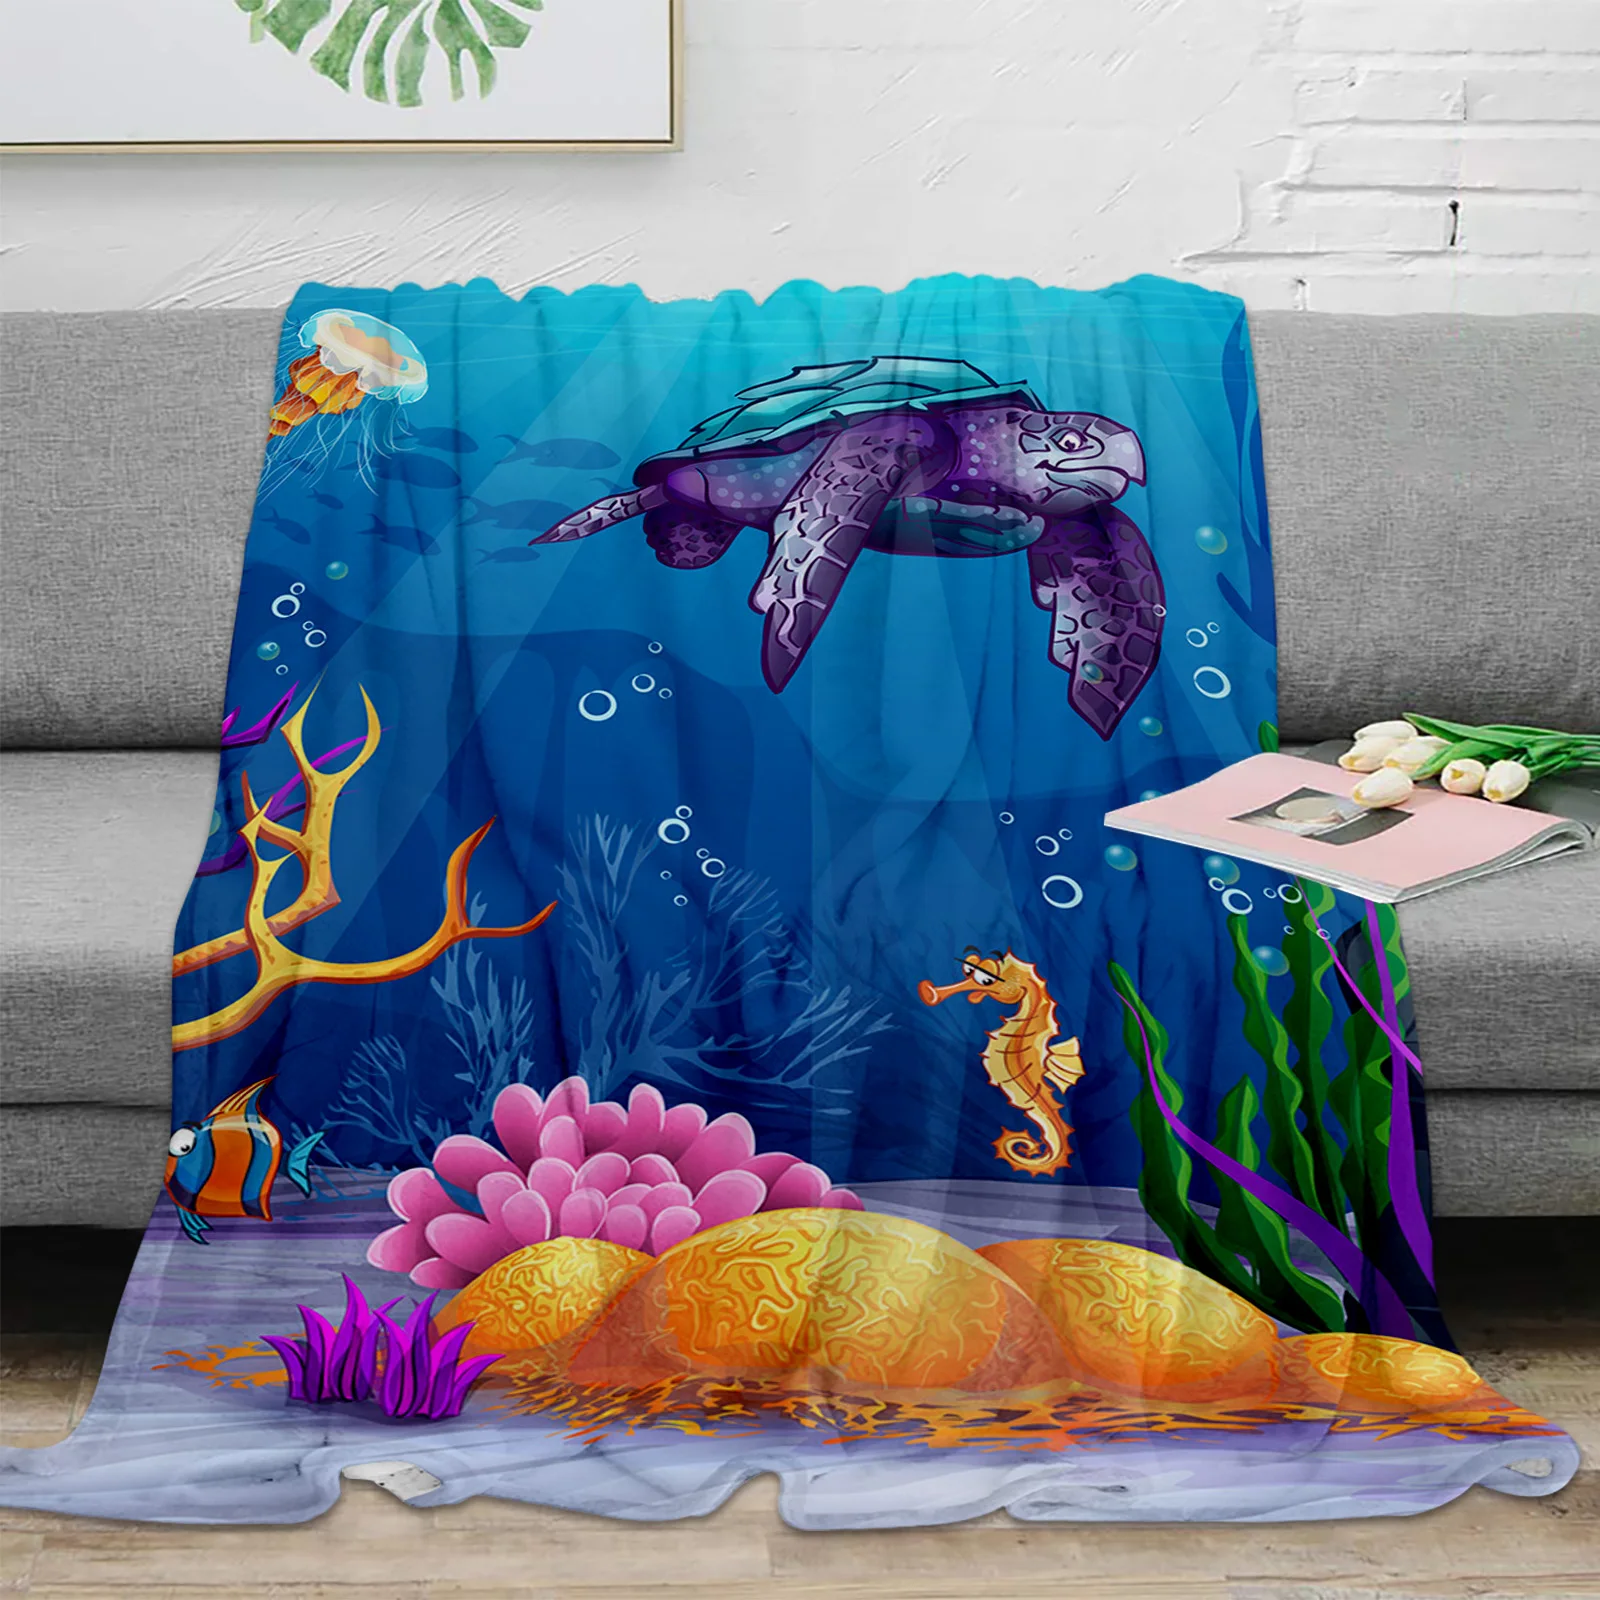 

Одеяло мягкое плюшевое, мультяшное покрывало с рисунком морской черепахи, морской лошади, кораллов, теплые простыни для дивана и кровати